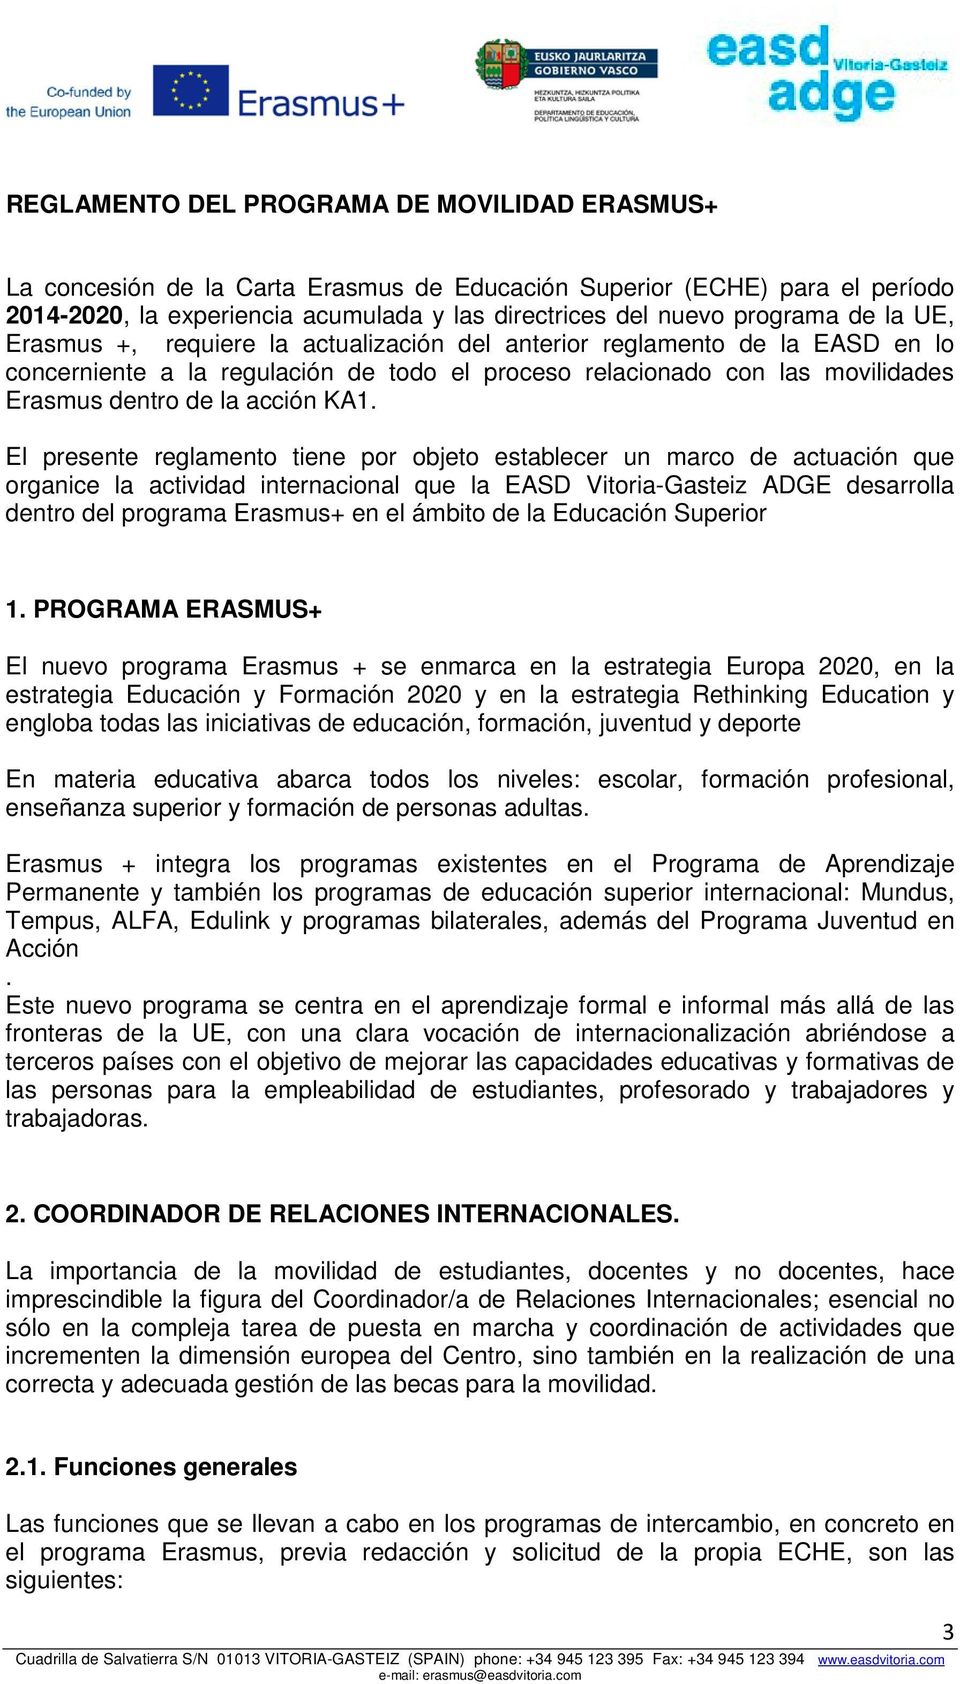 El presente reglamento tiene por objeto establecer un marco de actuación que organice la actividad internacional que la EASD Vitoria-Gasteiz ADGE desarrolla dentro del programa Erasmus+ en el ámbito